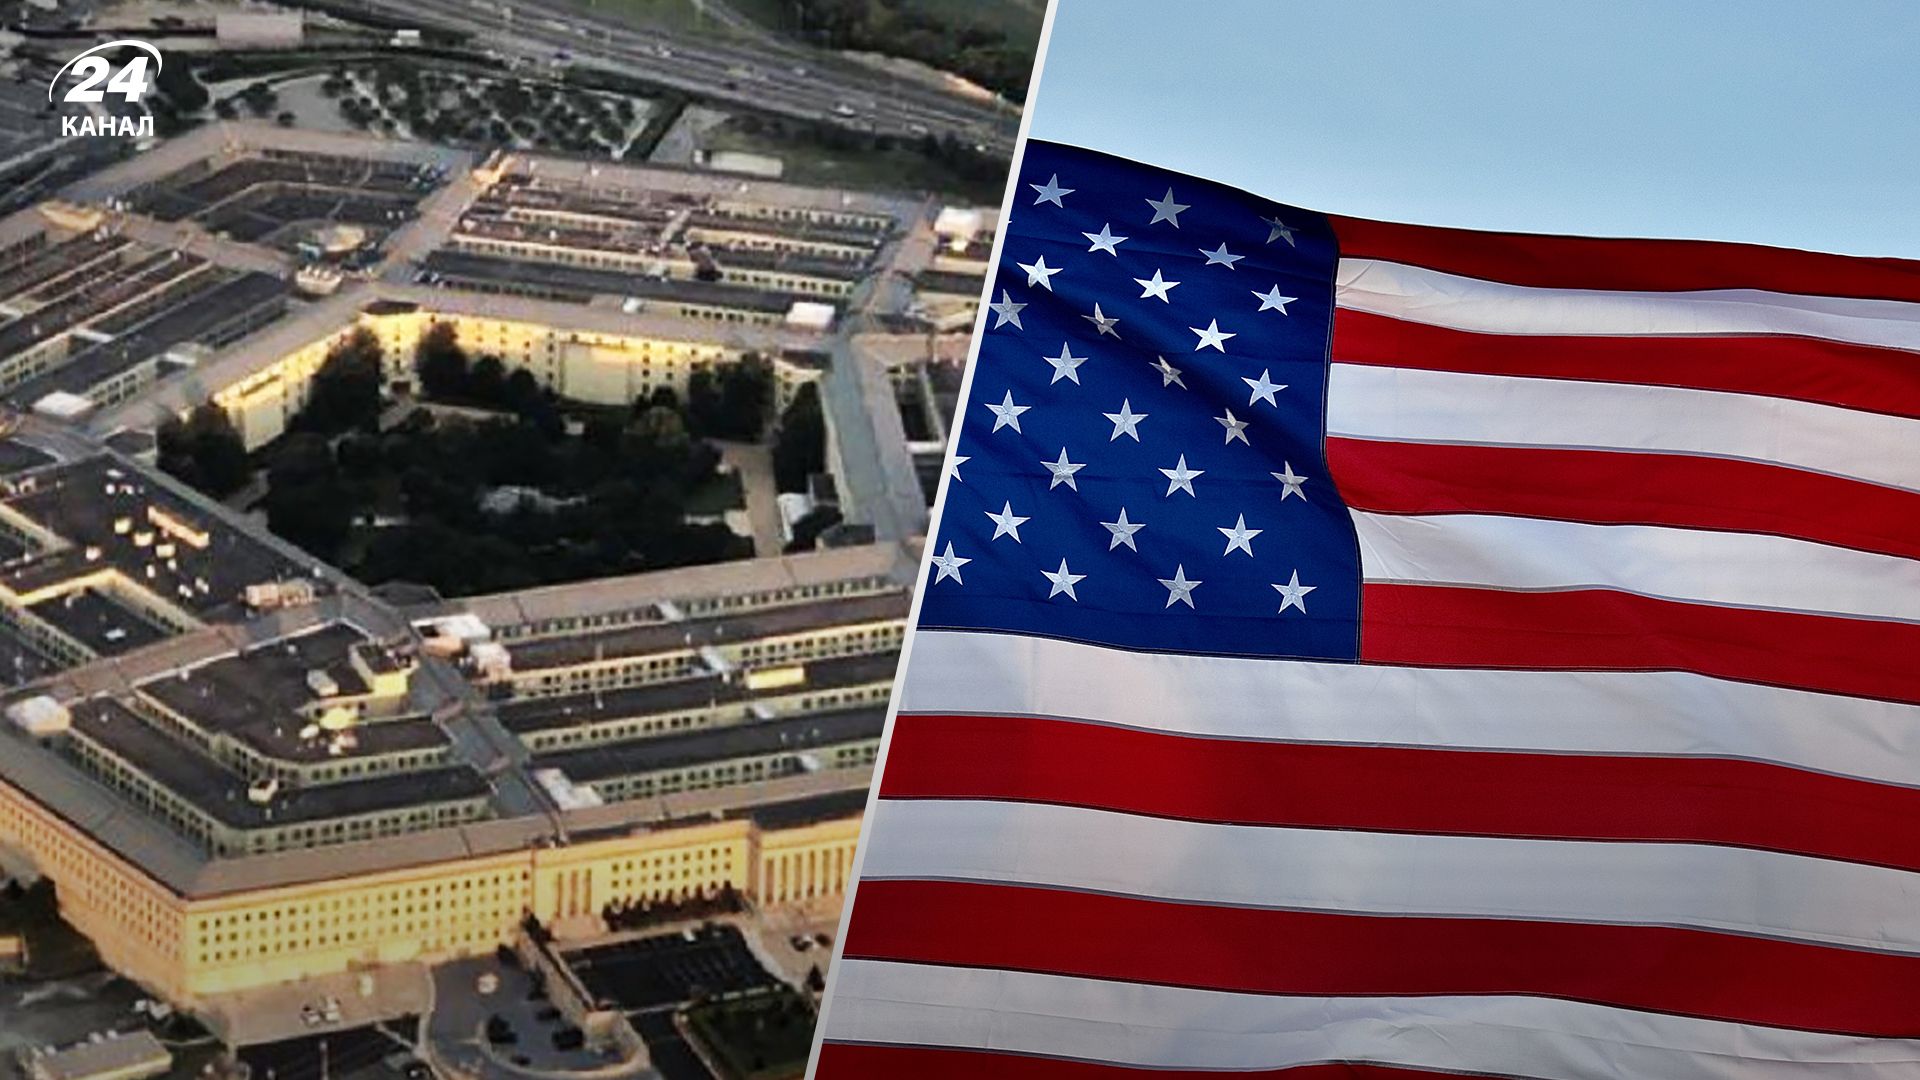 США оголосили про допомогу Україні 4 листопада 2022 - увійдуть танки, дрони, система ППО